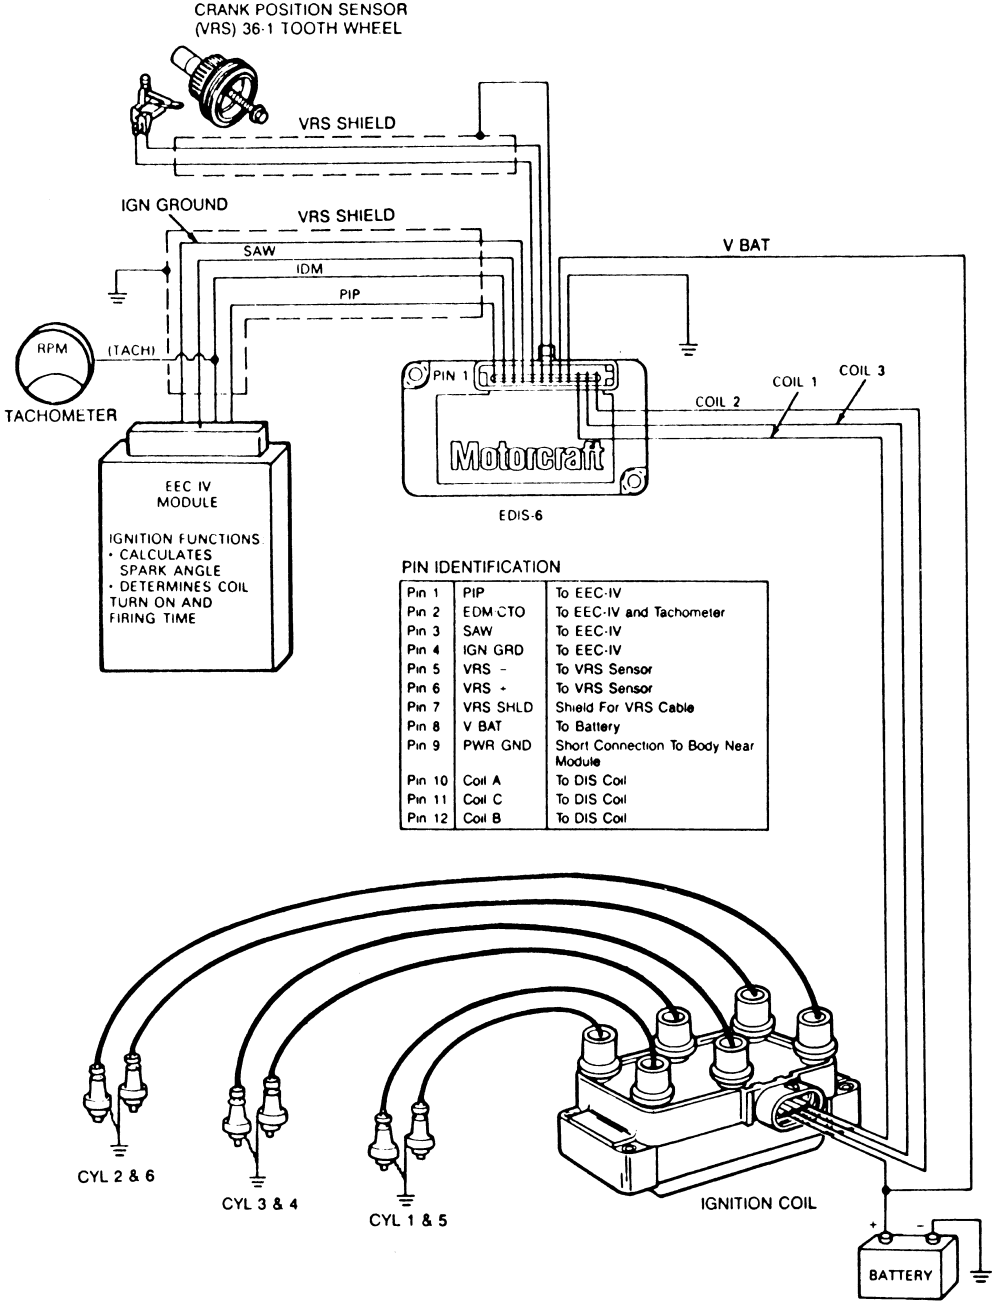 2000 Ford Taurus Spark Plug Wiring Diagram from schematron.org